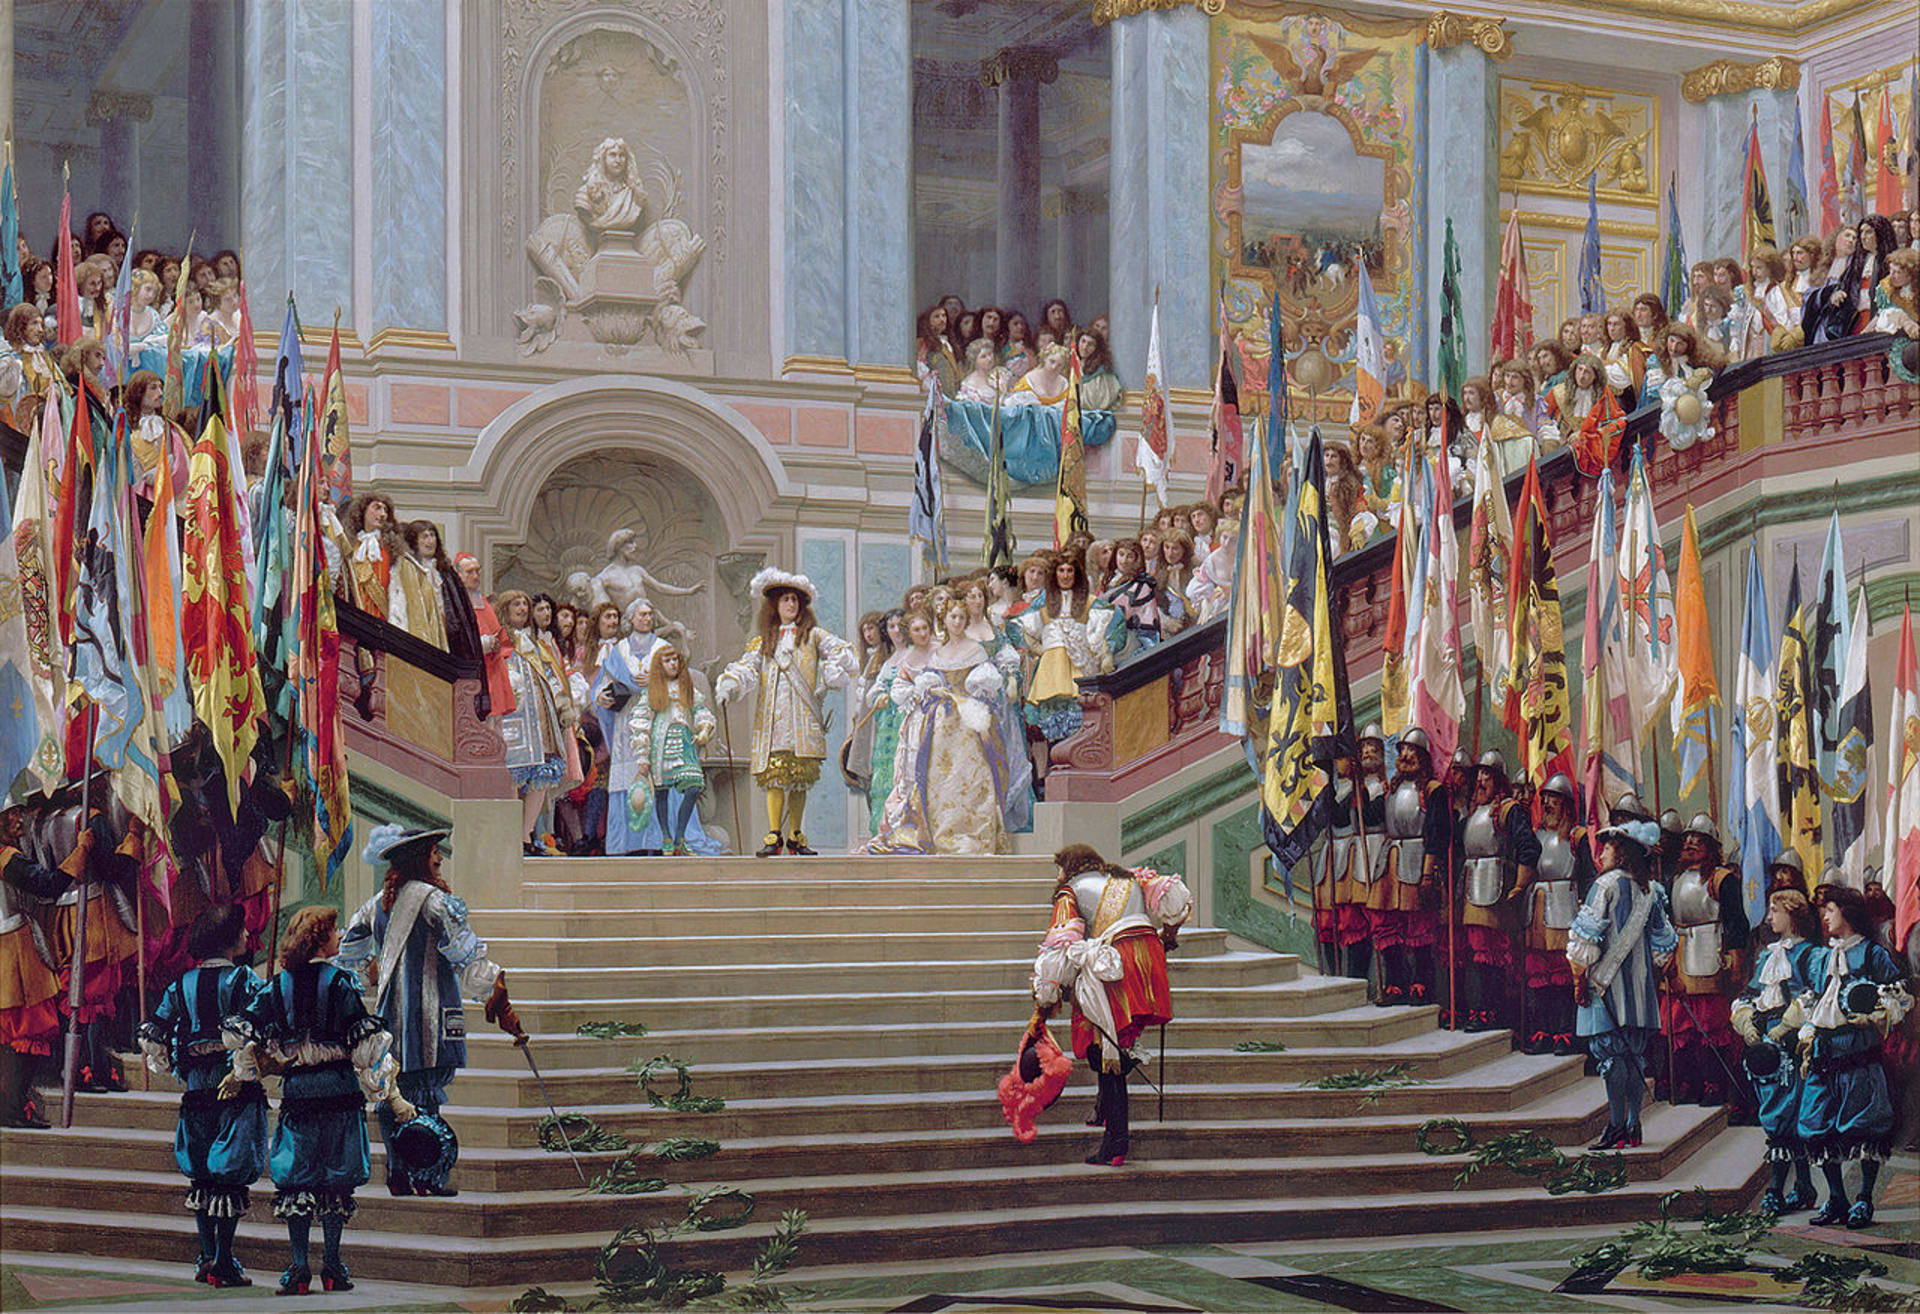 Přijetí knížete z Condé na dvoře ve Versailles roku 1674 - sledujte boty